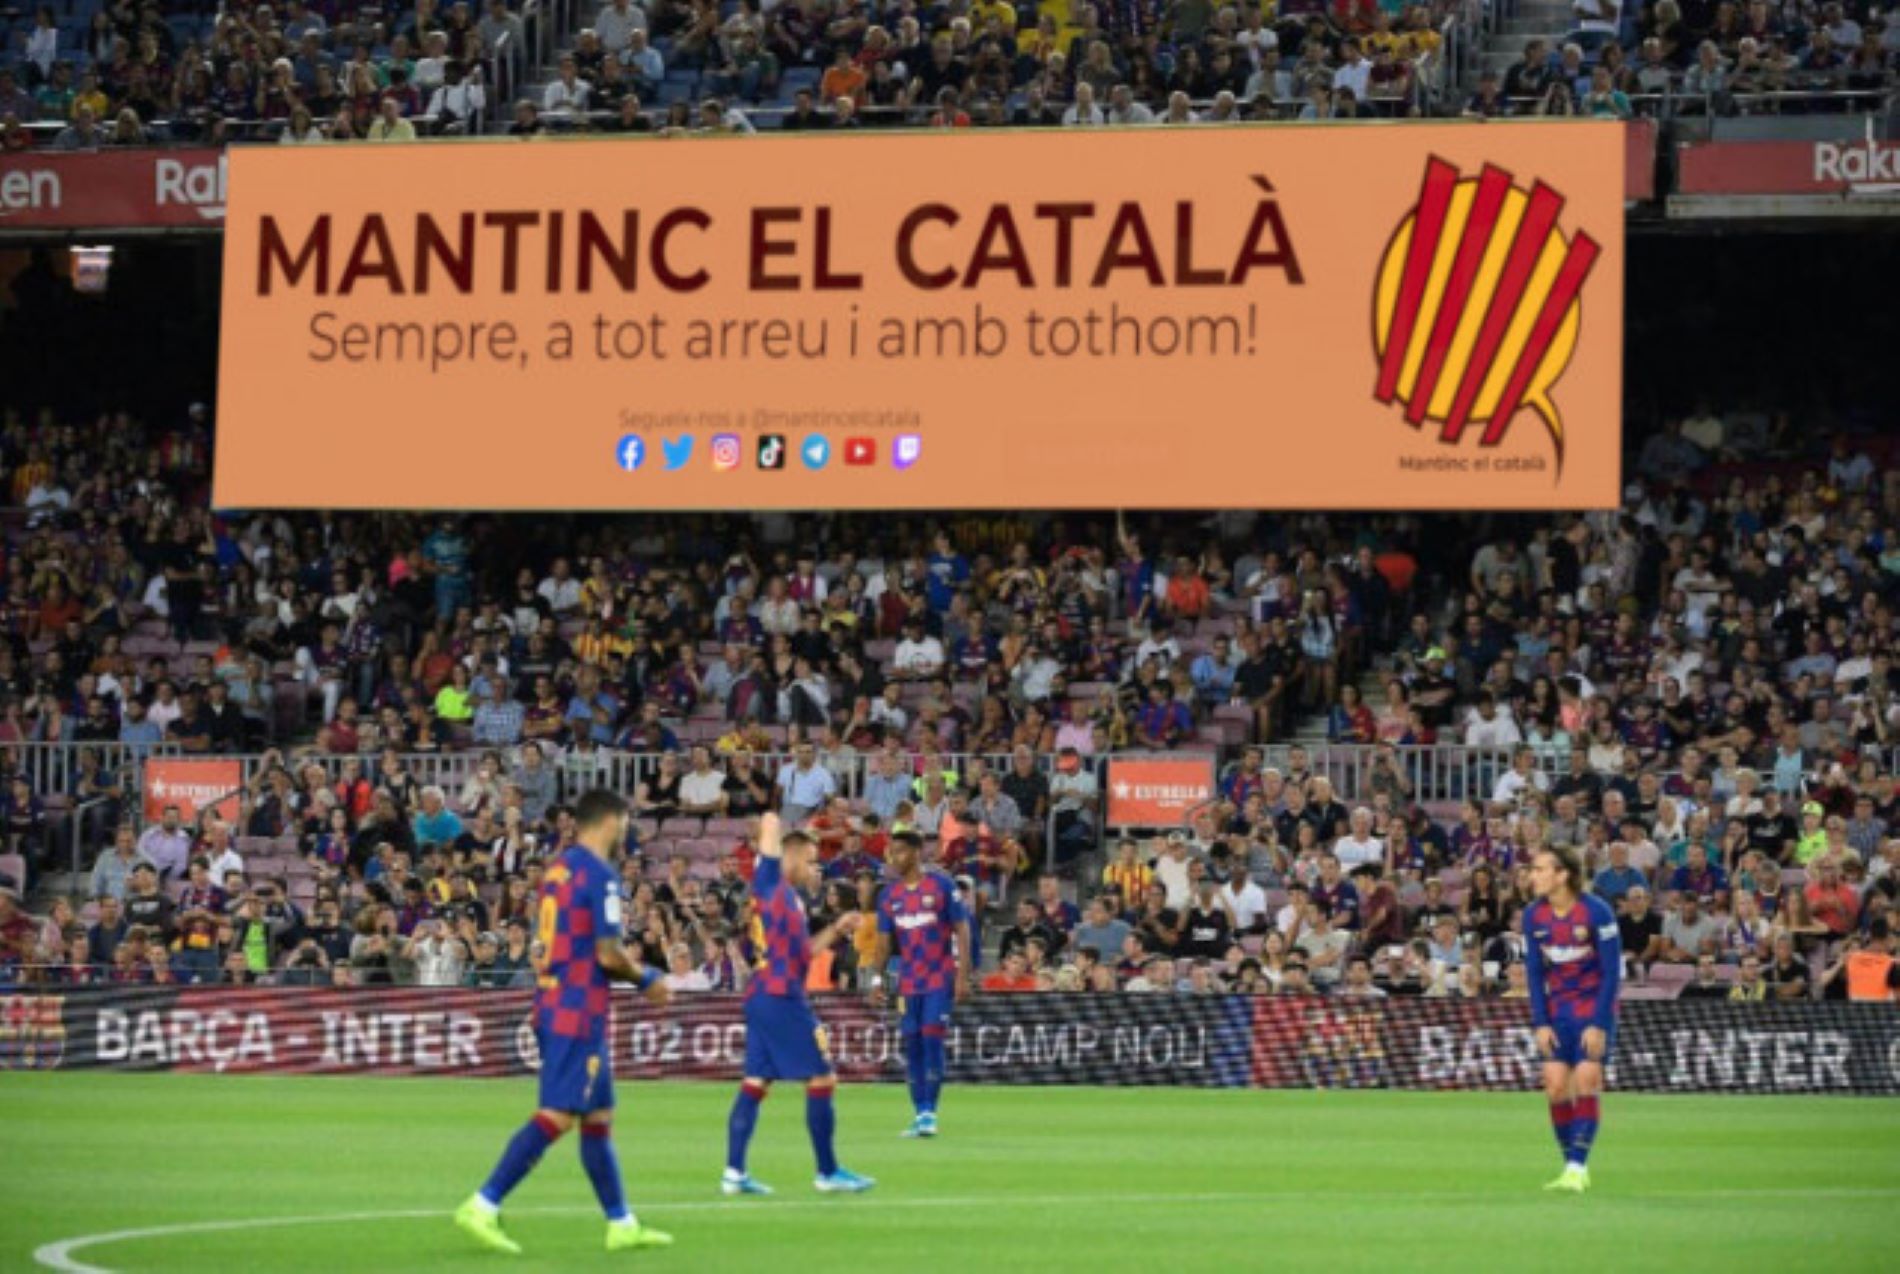 Mantinc el Català lanza una campaña para colgar una pancarta gigante en el Camp Nou